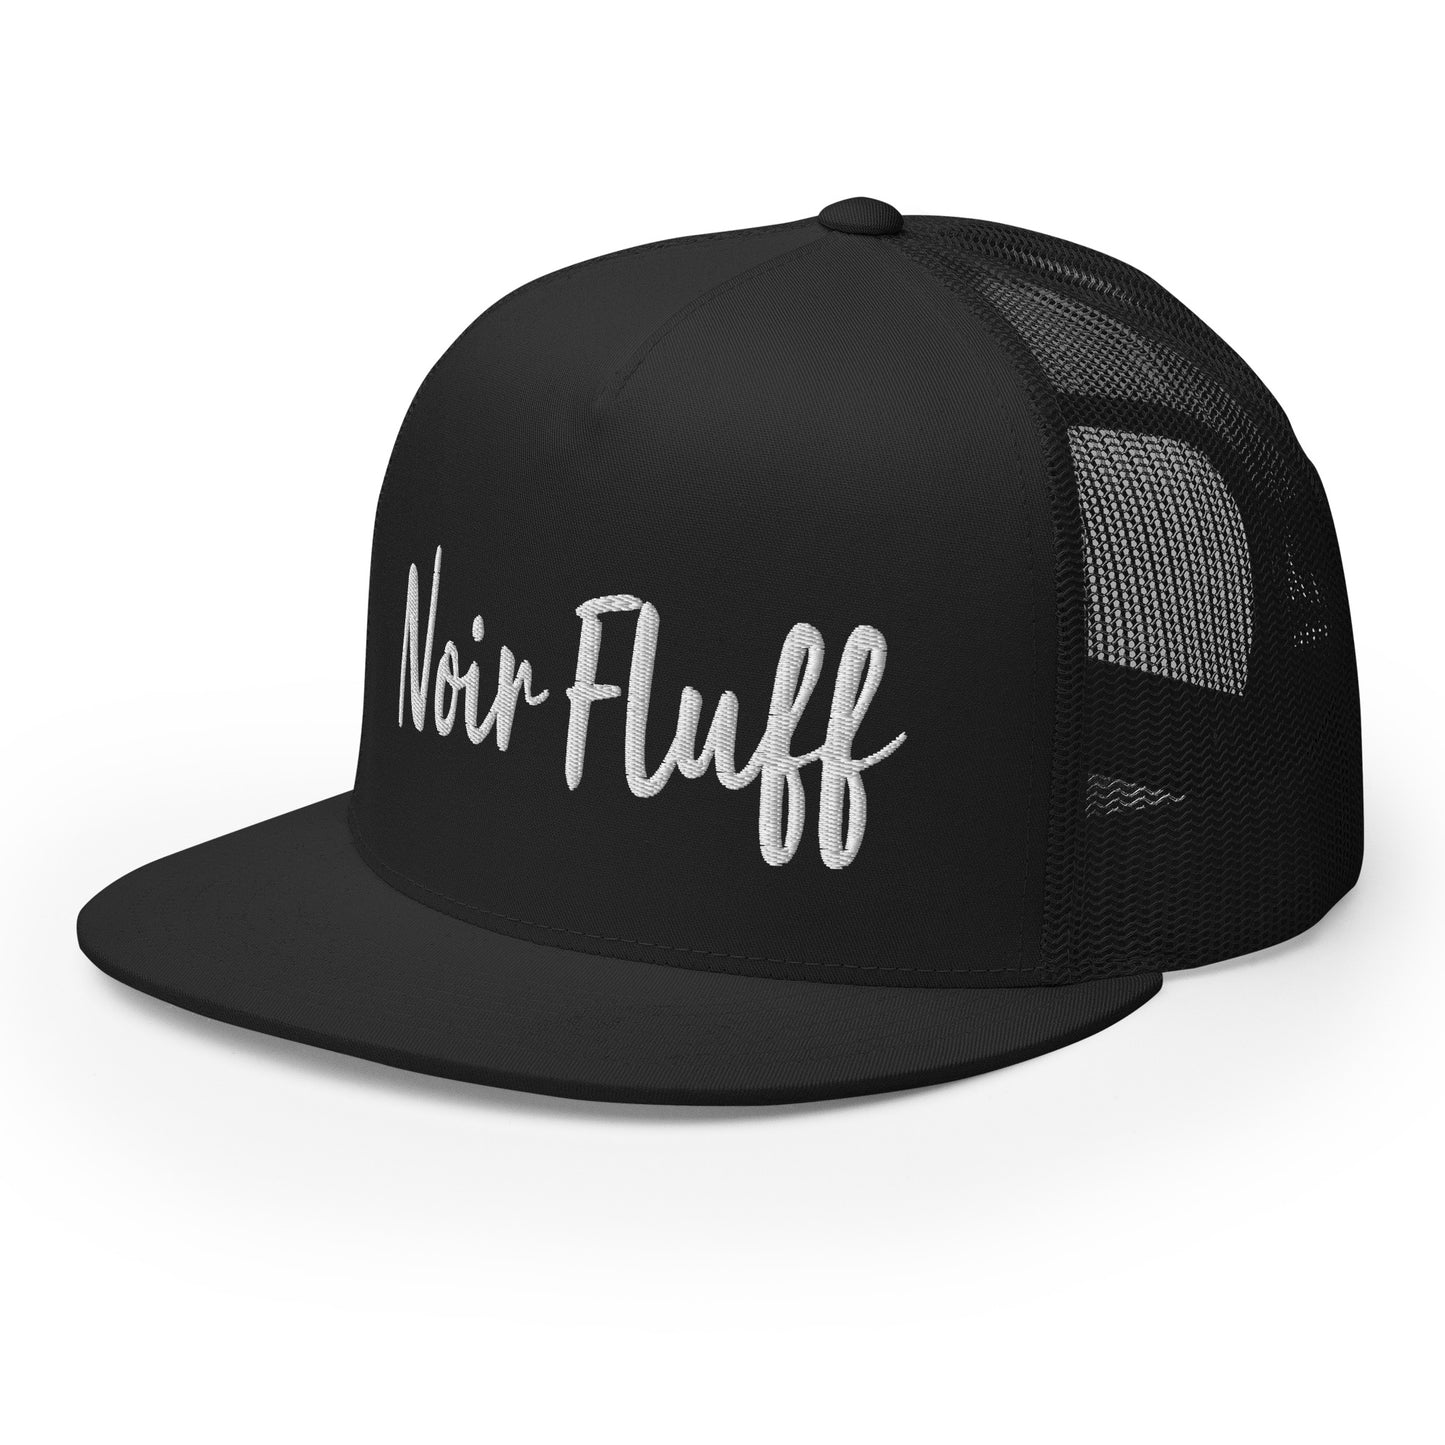 Noir Fluff hat